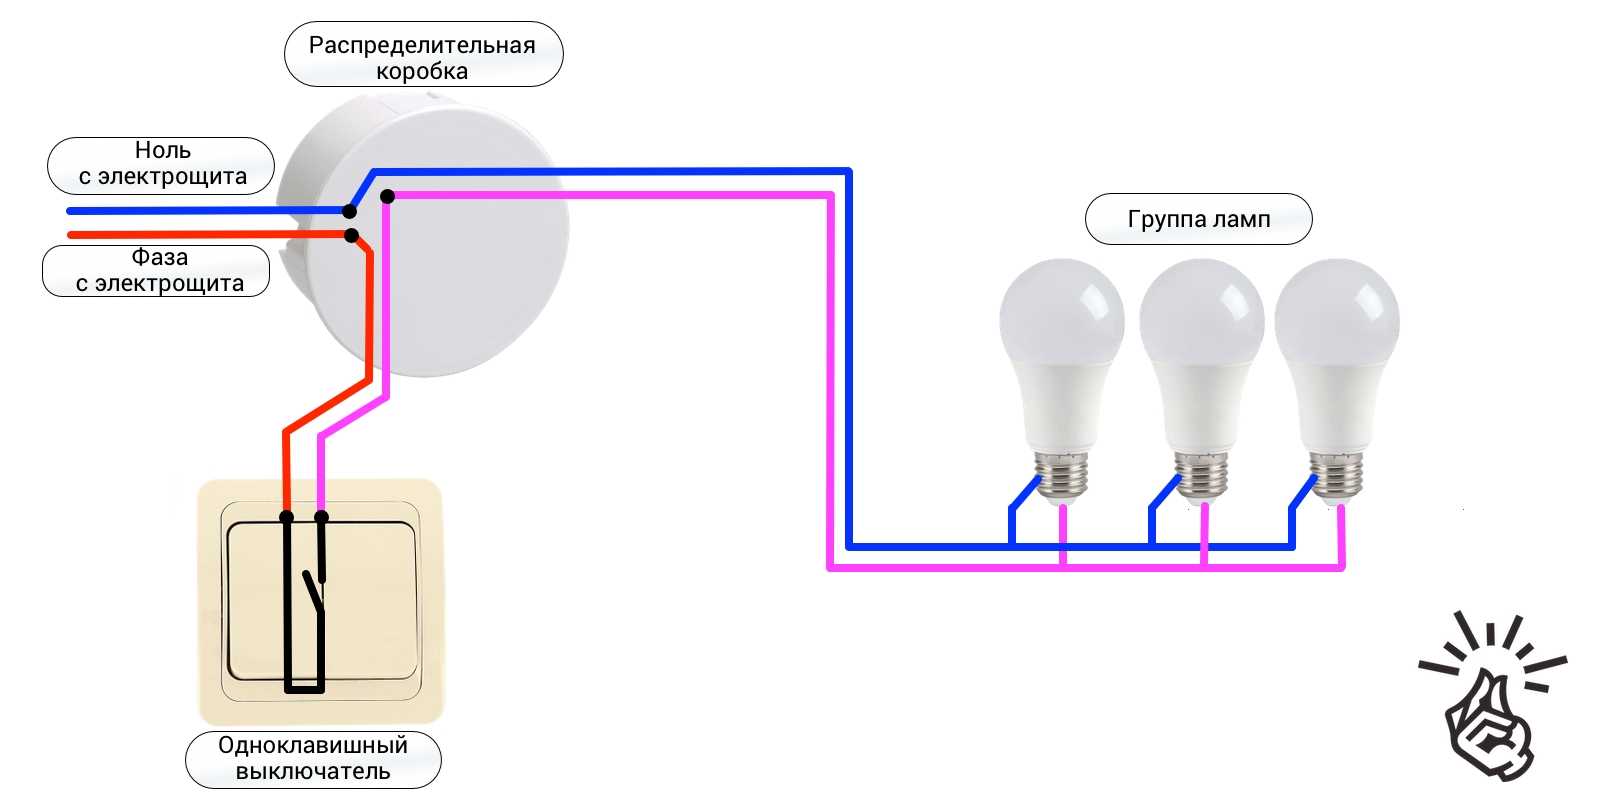 Как подключить две лампочки к одному выключателю: схема, видео, инструкция